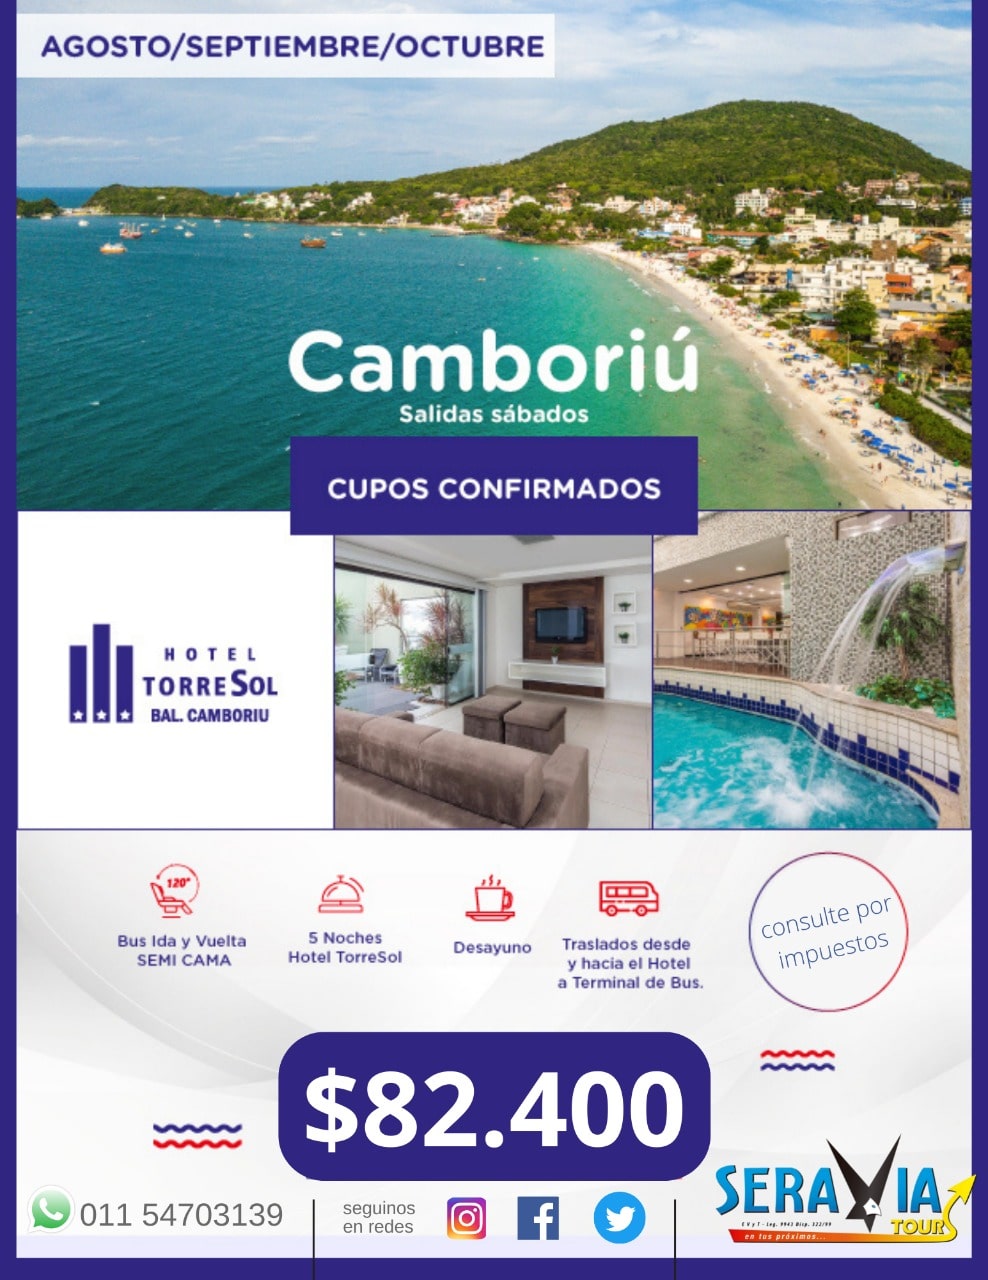 Camboriú - Brasil en Temporada Baja 2022